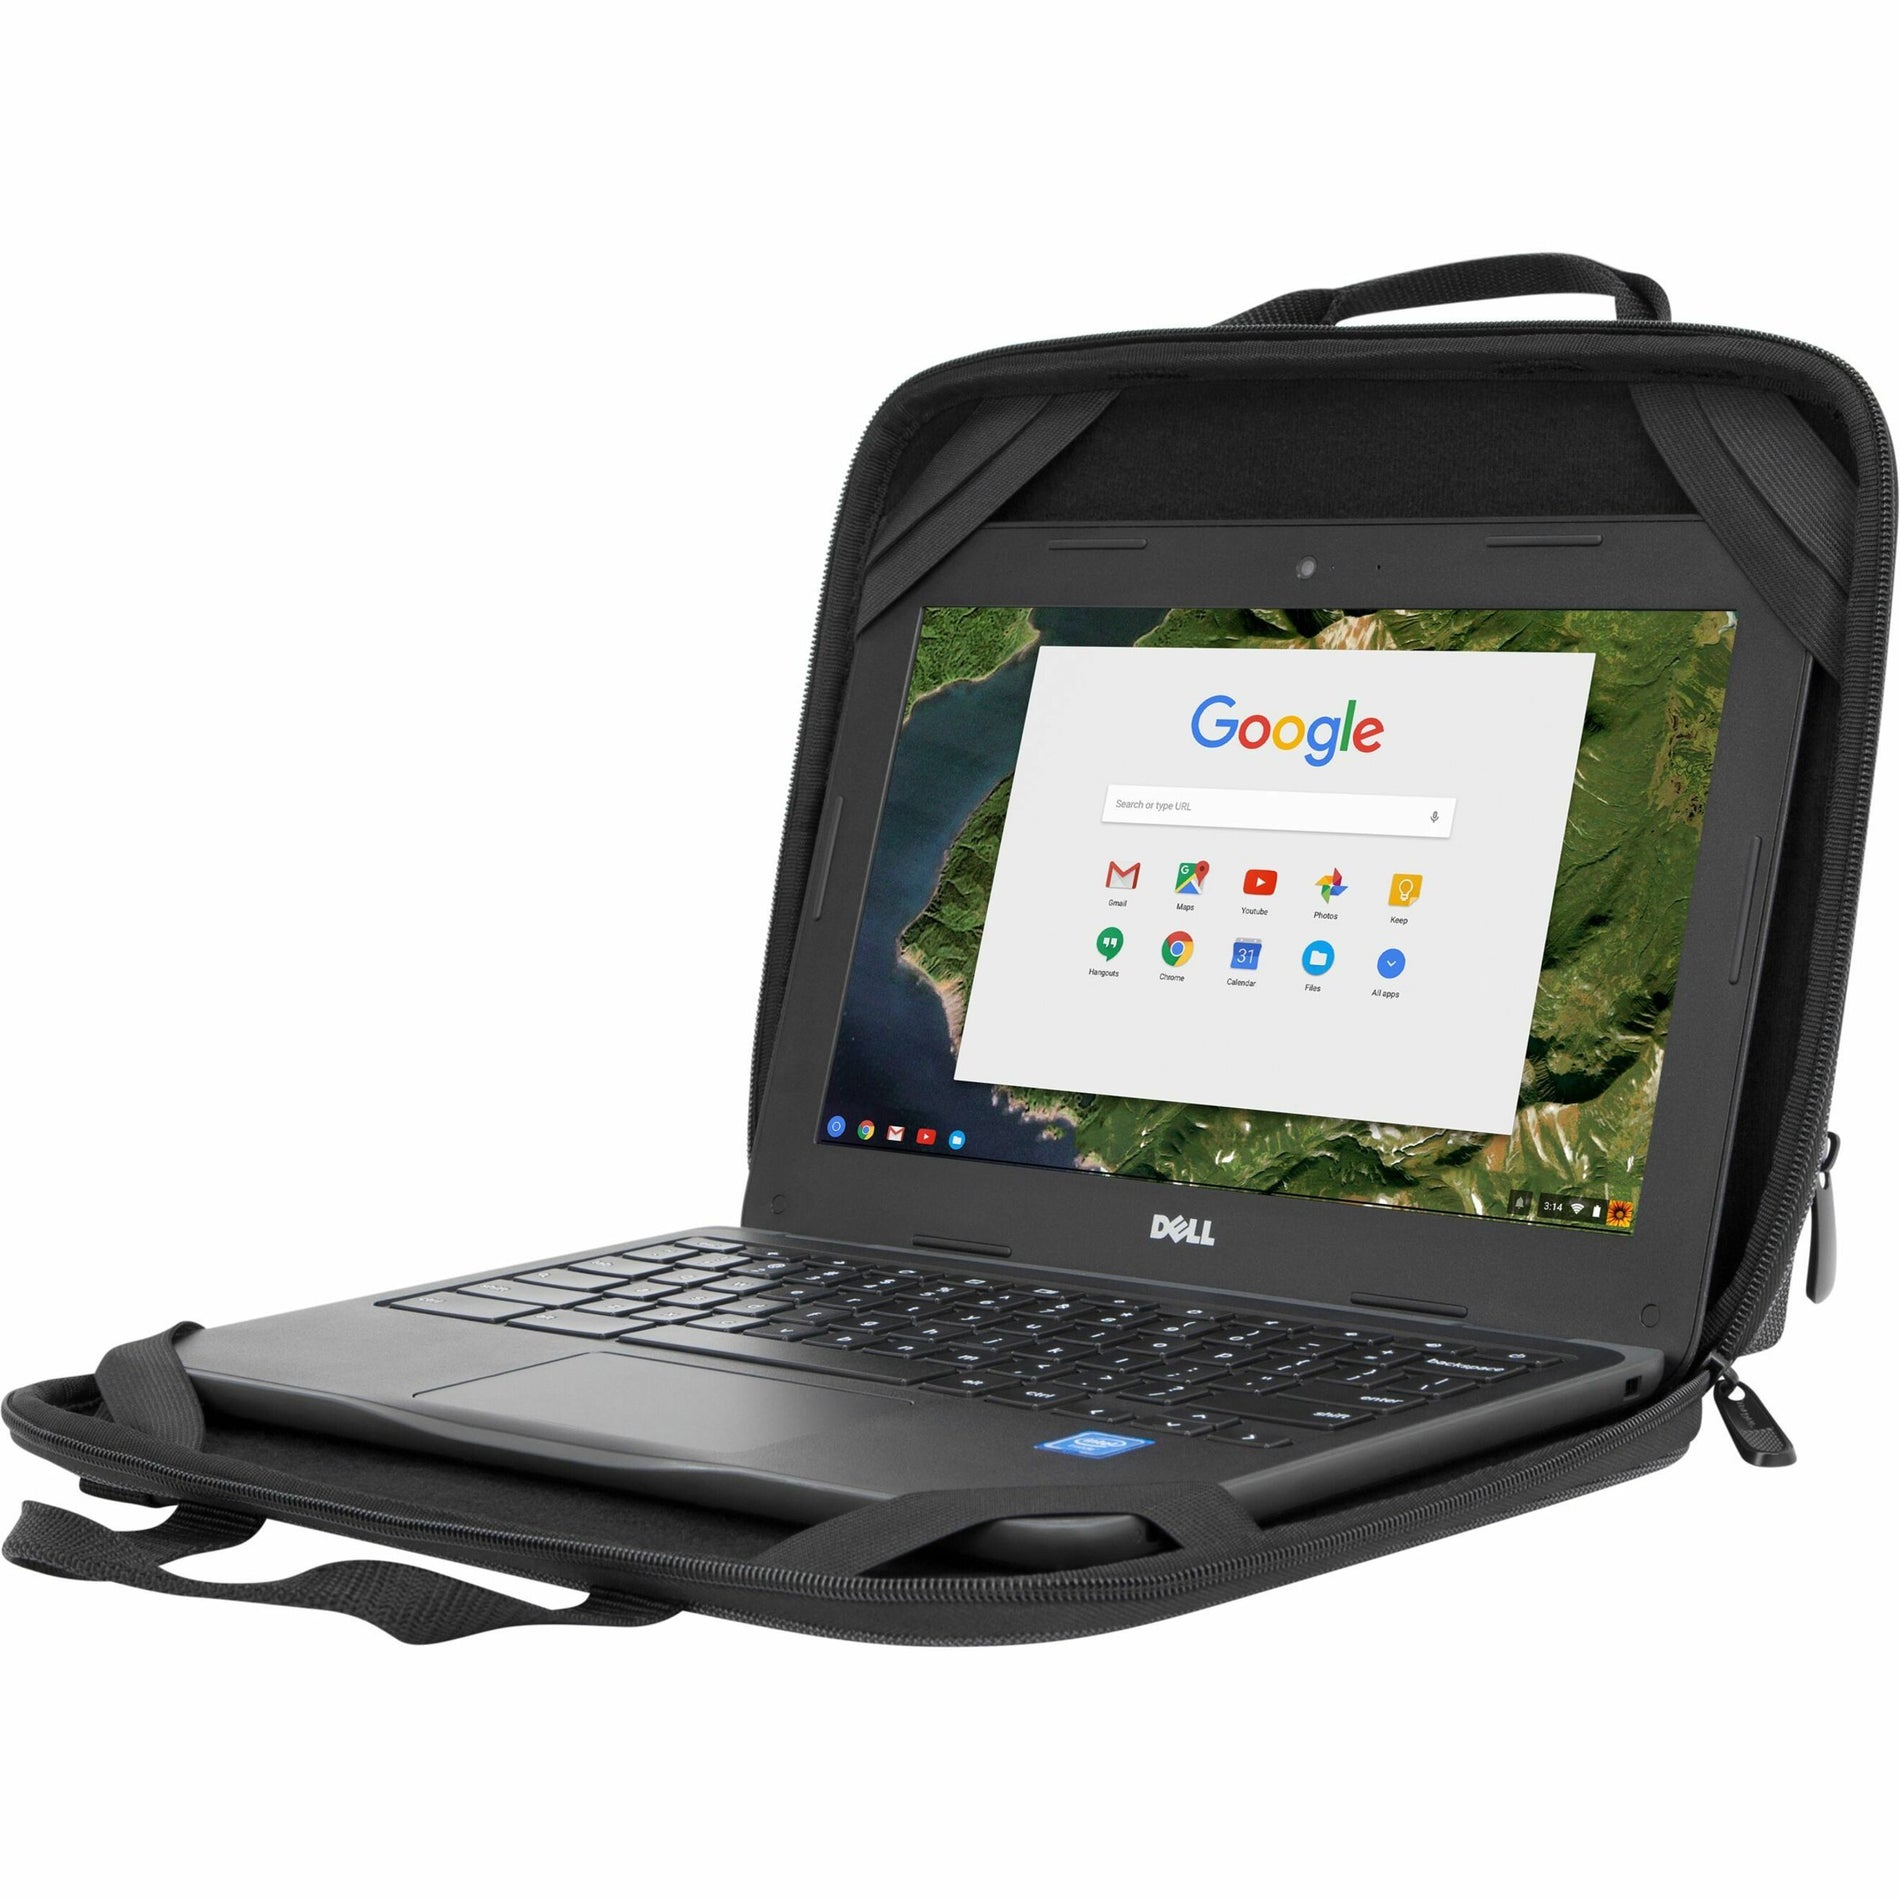 Targus TED006GL 11.6 "Work-in Essentials Case for Chromebook - Noir / Gris Étui léger et durable pour accessoires et adaptateur d'alimentation